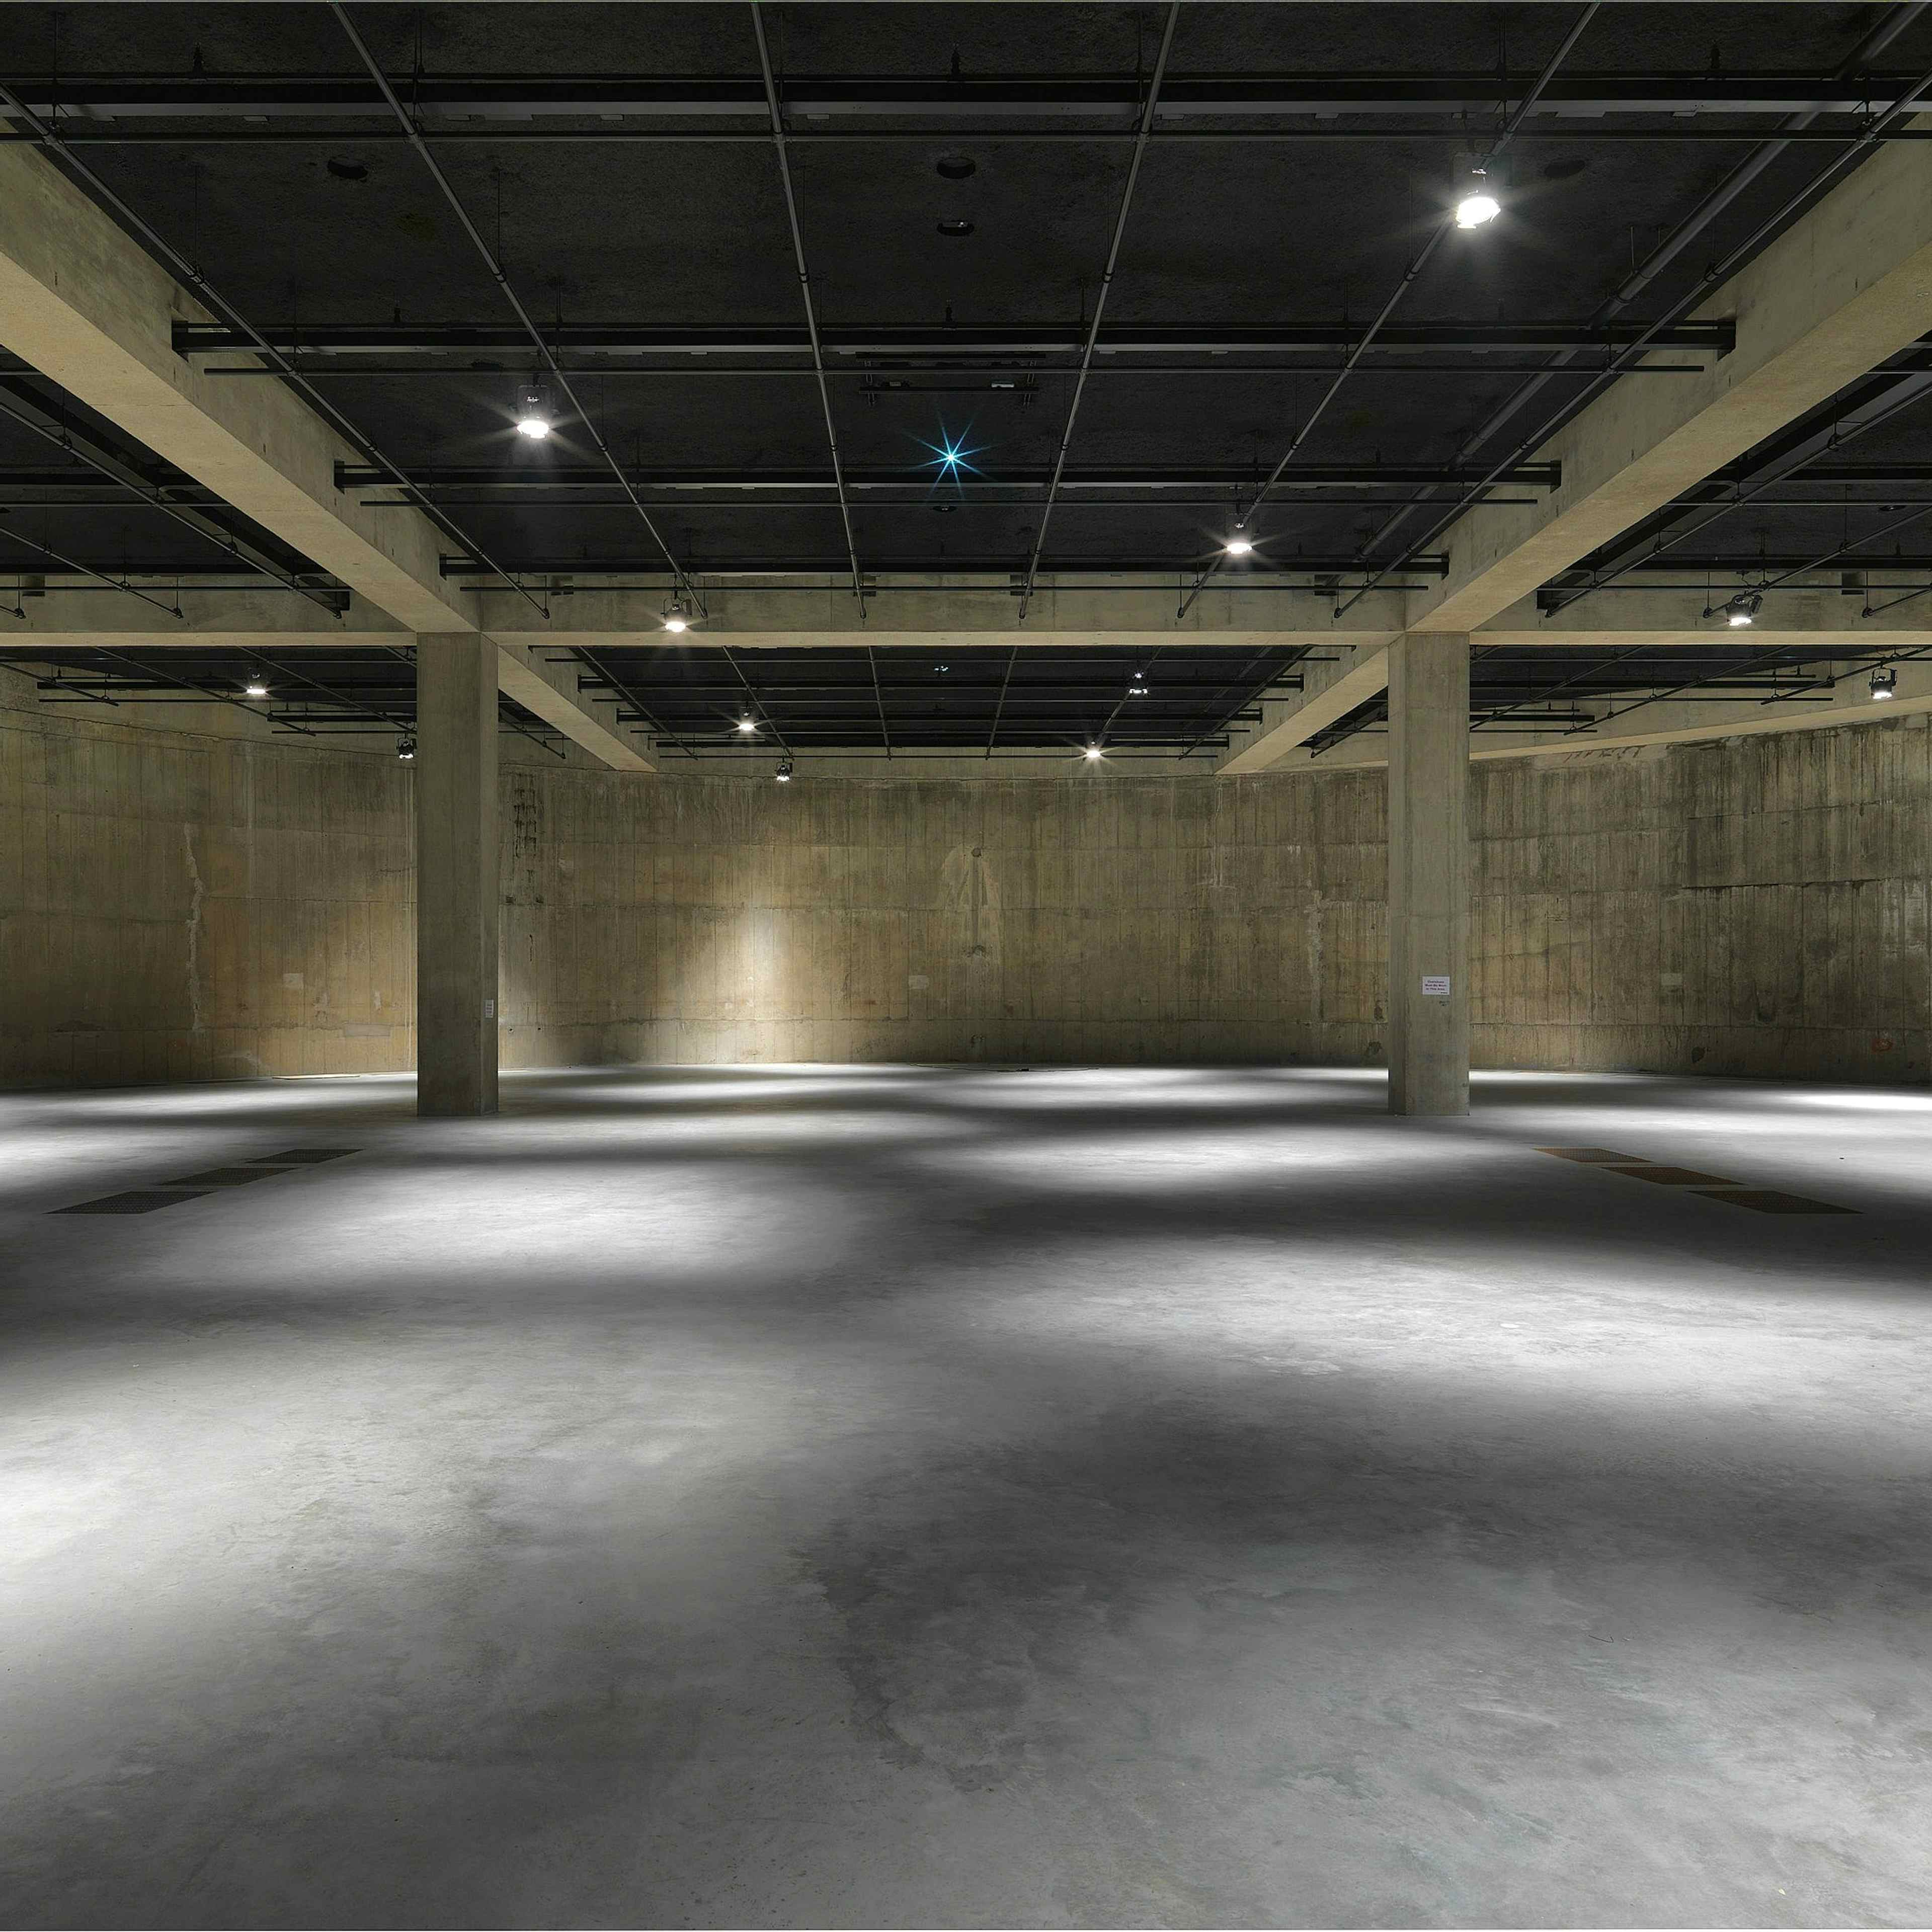 Tate Modern - The Tanks image 3